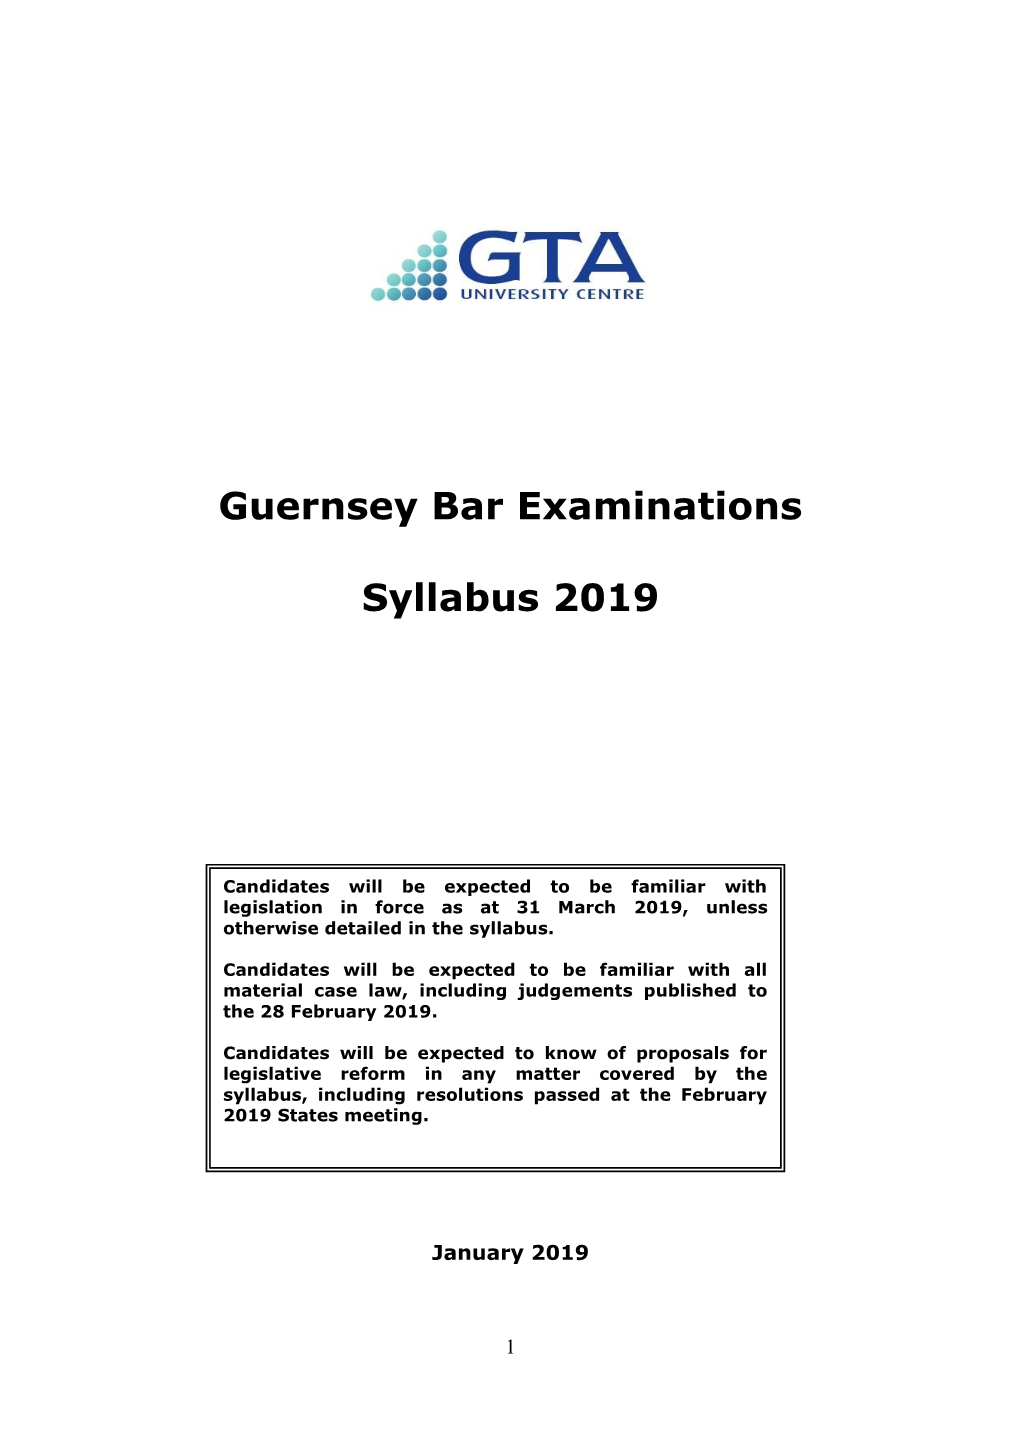 Guernsey Bar Examinations Syllabus 2019